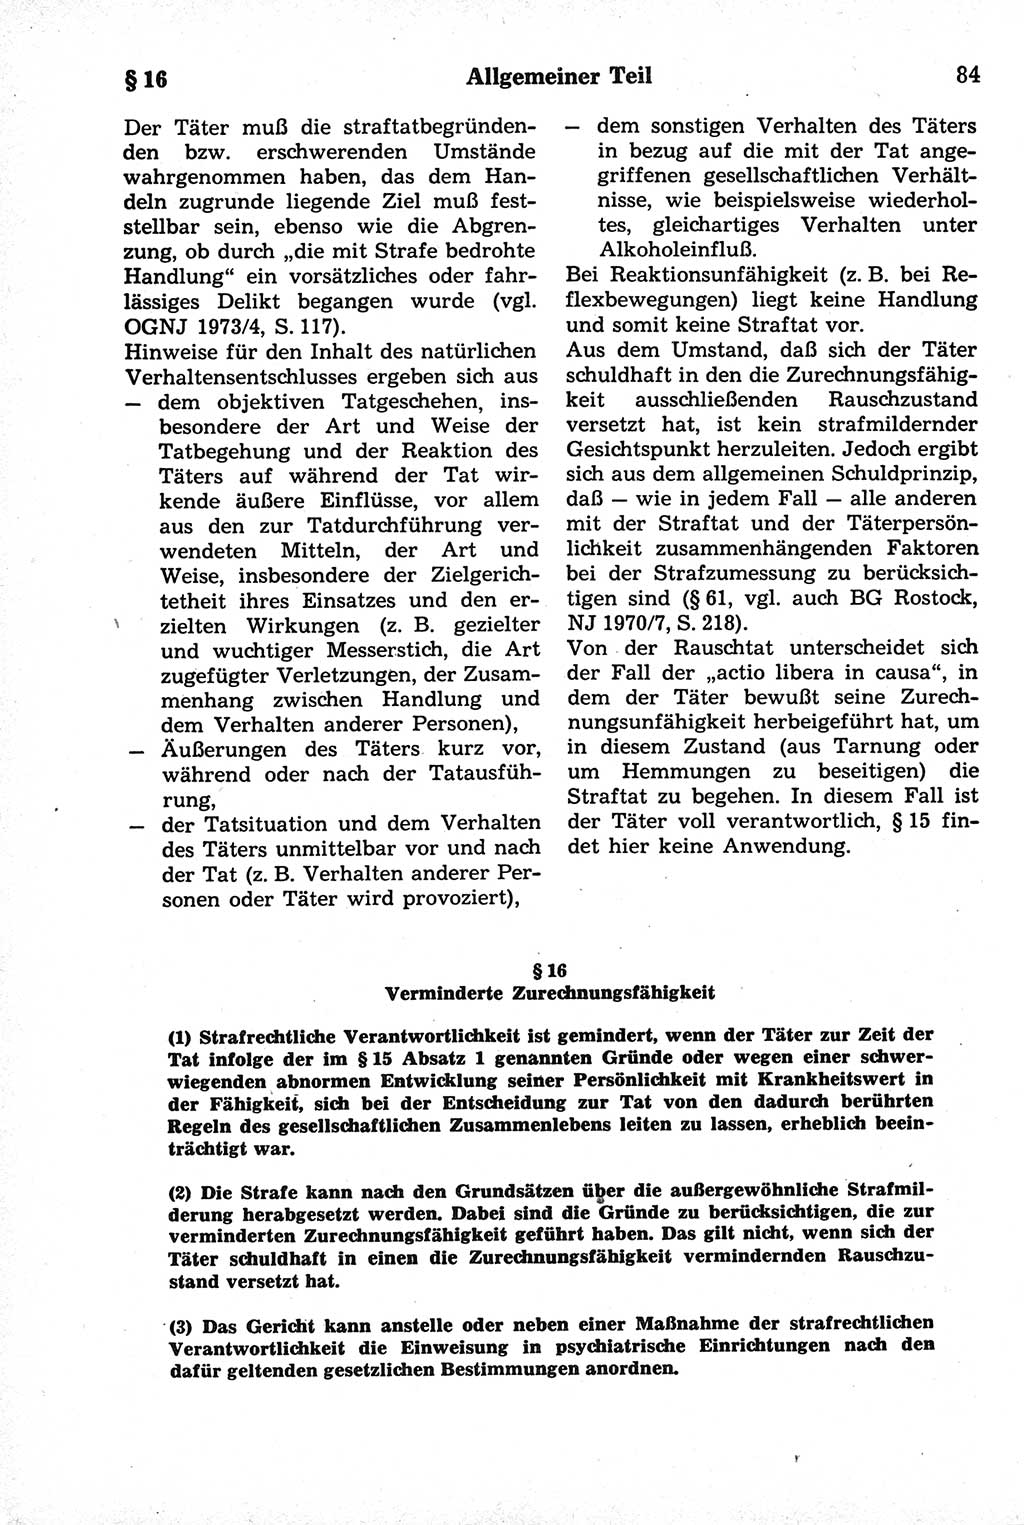 Strafrecht der Deutschen Demokratischen Republik (DDR), Kommentar zum Strafgesetzbuch (StGB) 1981, Seite 84 (Strafr. DDR Komm. StGB 1981, S. 84)